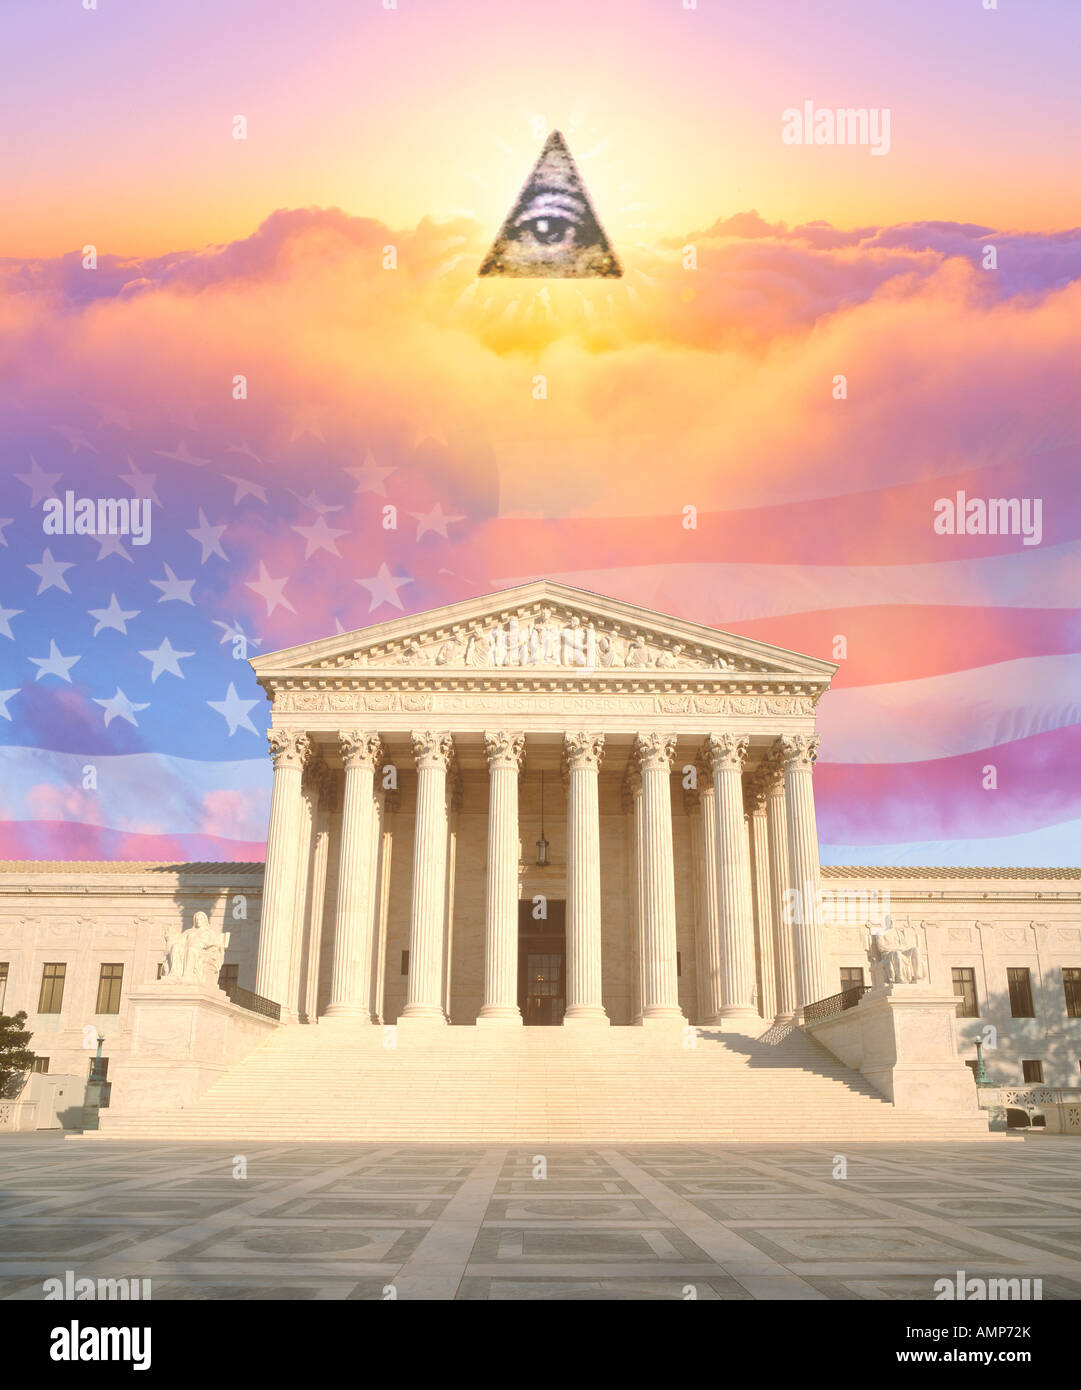 Zusammengesetztes Bild der oberste Gerichtshof der USA, amerikanische Flagge, Auge Gottes und farbenfrohen Sonnenaufgang Himmel Stockfoto